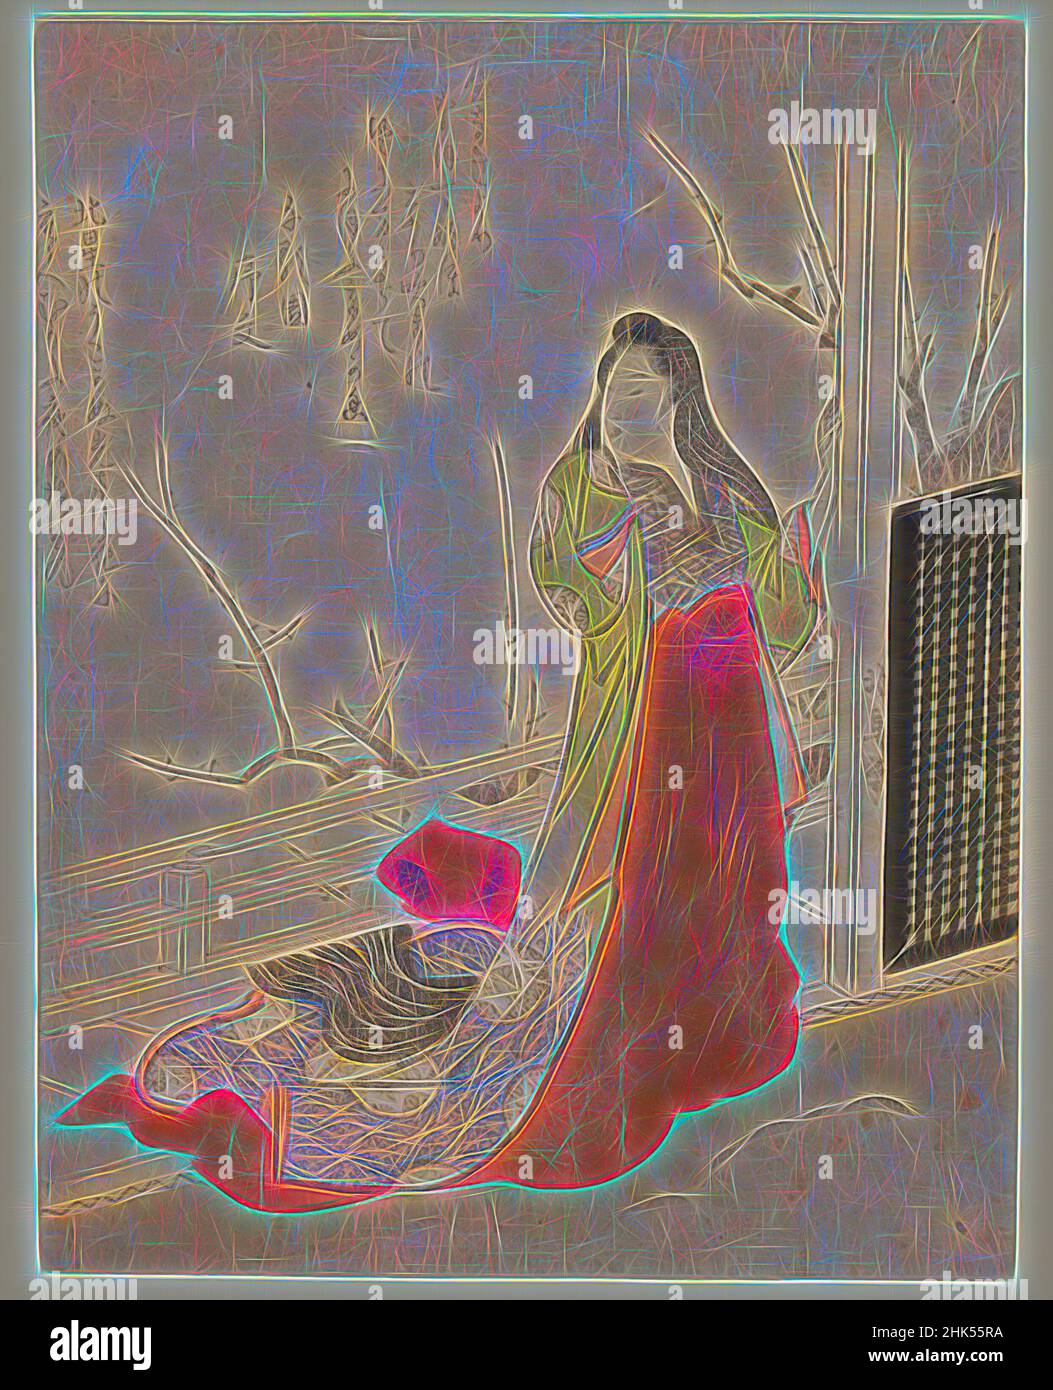 Inspiriert von Lady in Court Dress auf Veranda mit blühender Pflaume, Totoya Hokkei, japanisch, 1780-1850, Farbholzschnitt auf Papier, Japan, ca. 1820, Edo-Periode, 8 1/4 x 6 5/8 Zoll, 21 x 16,8 cm, Bijinga, Edo-Periode, Mode, Kimono, Minimal, Terrace, Woman, Reinmagined von Artotop. Klassische Kunst neu erfunden mit einem modernen Twist. Design von warmen fröhlichen Leuchten der Helligkeit und Lichtstrahl Strahlkraft. Fotografie inspiriert von Surrealismus und Futurismus, umarmt dynamische Energie der modernen Technologie, Bewegung, Geschwindigkeit und Kultur zu revolutionieren Stockfoto